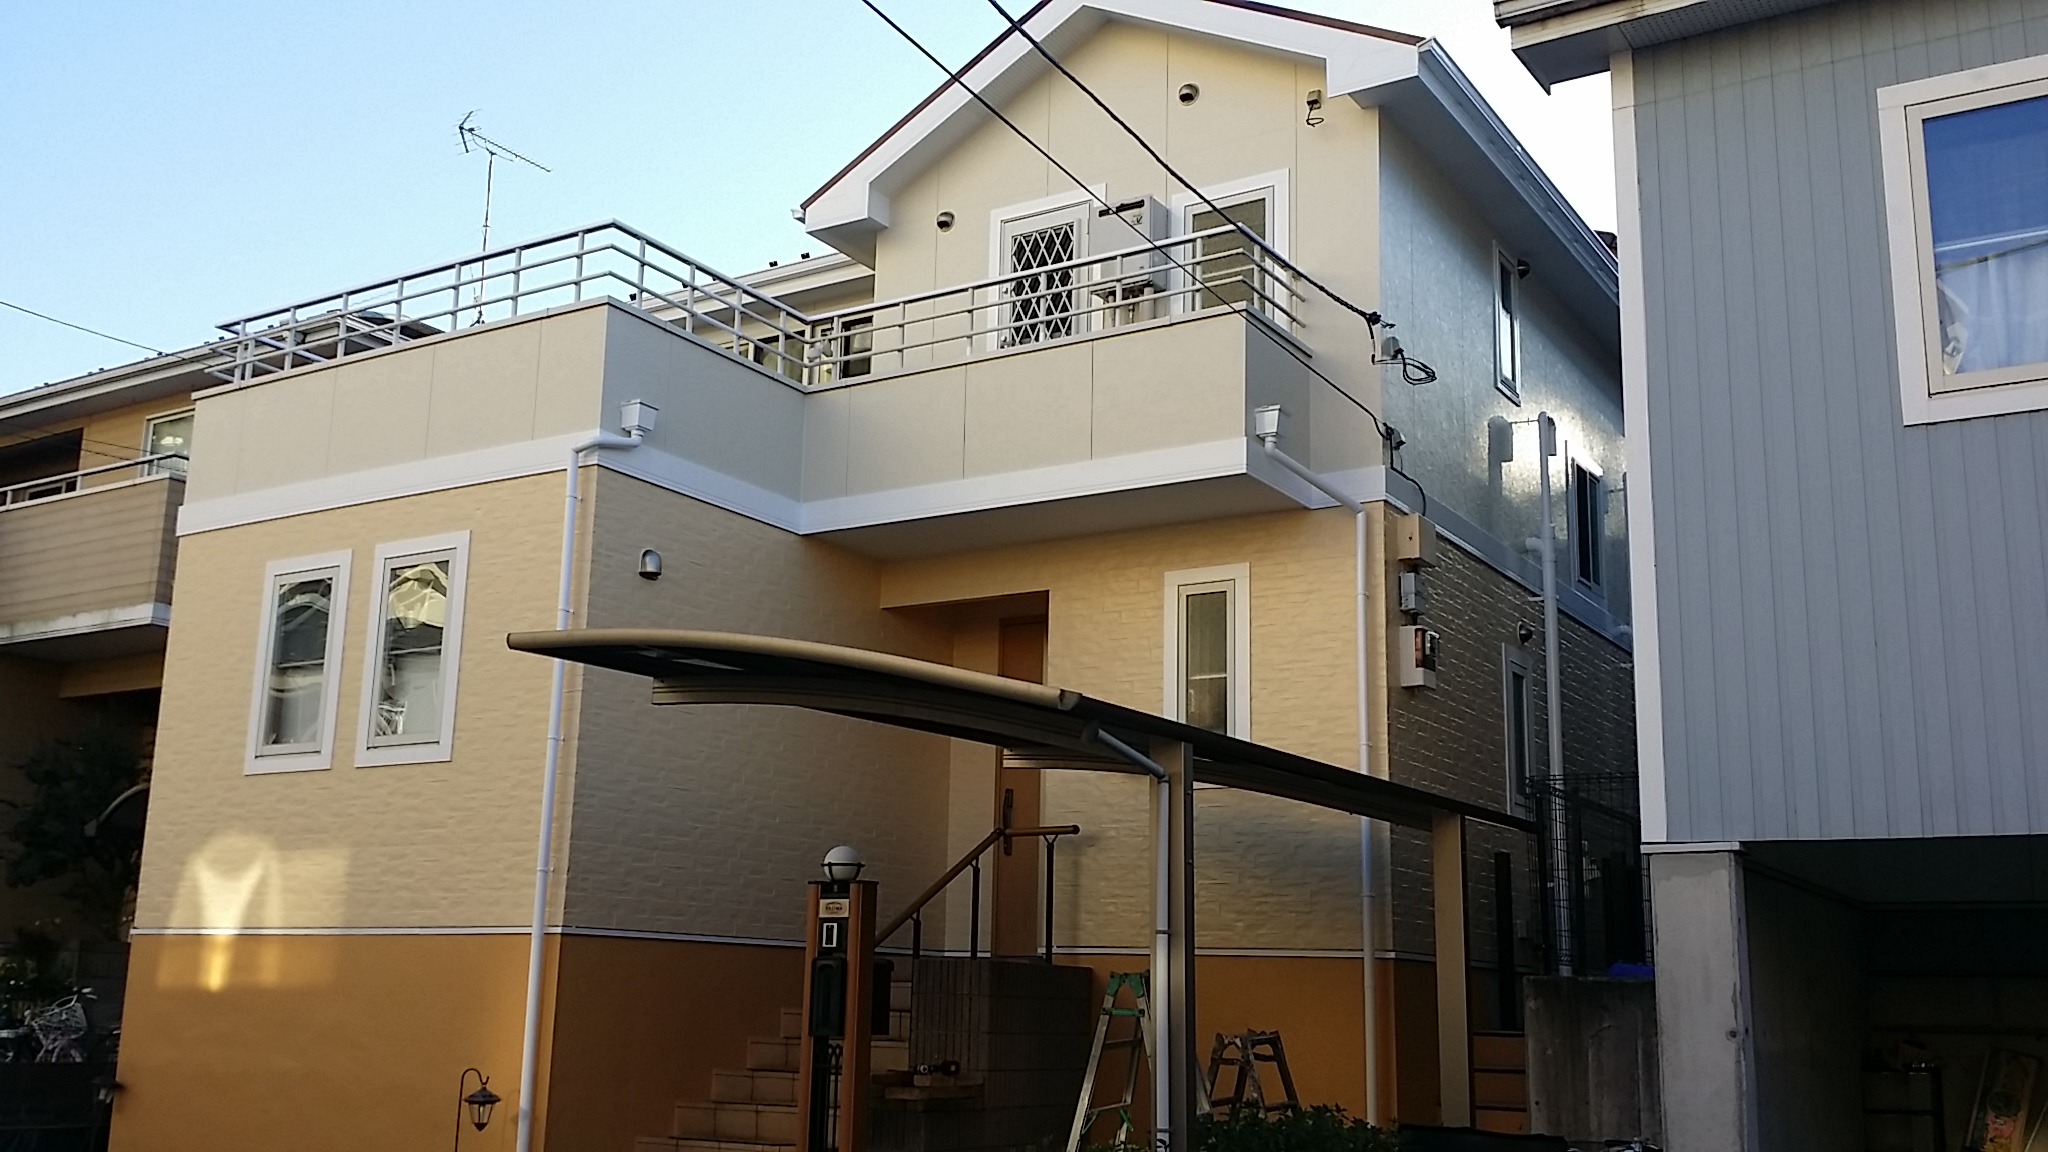 千葉県我孫子市の外壁塗装・屋根塗装工事の施工事例